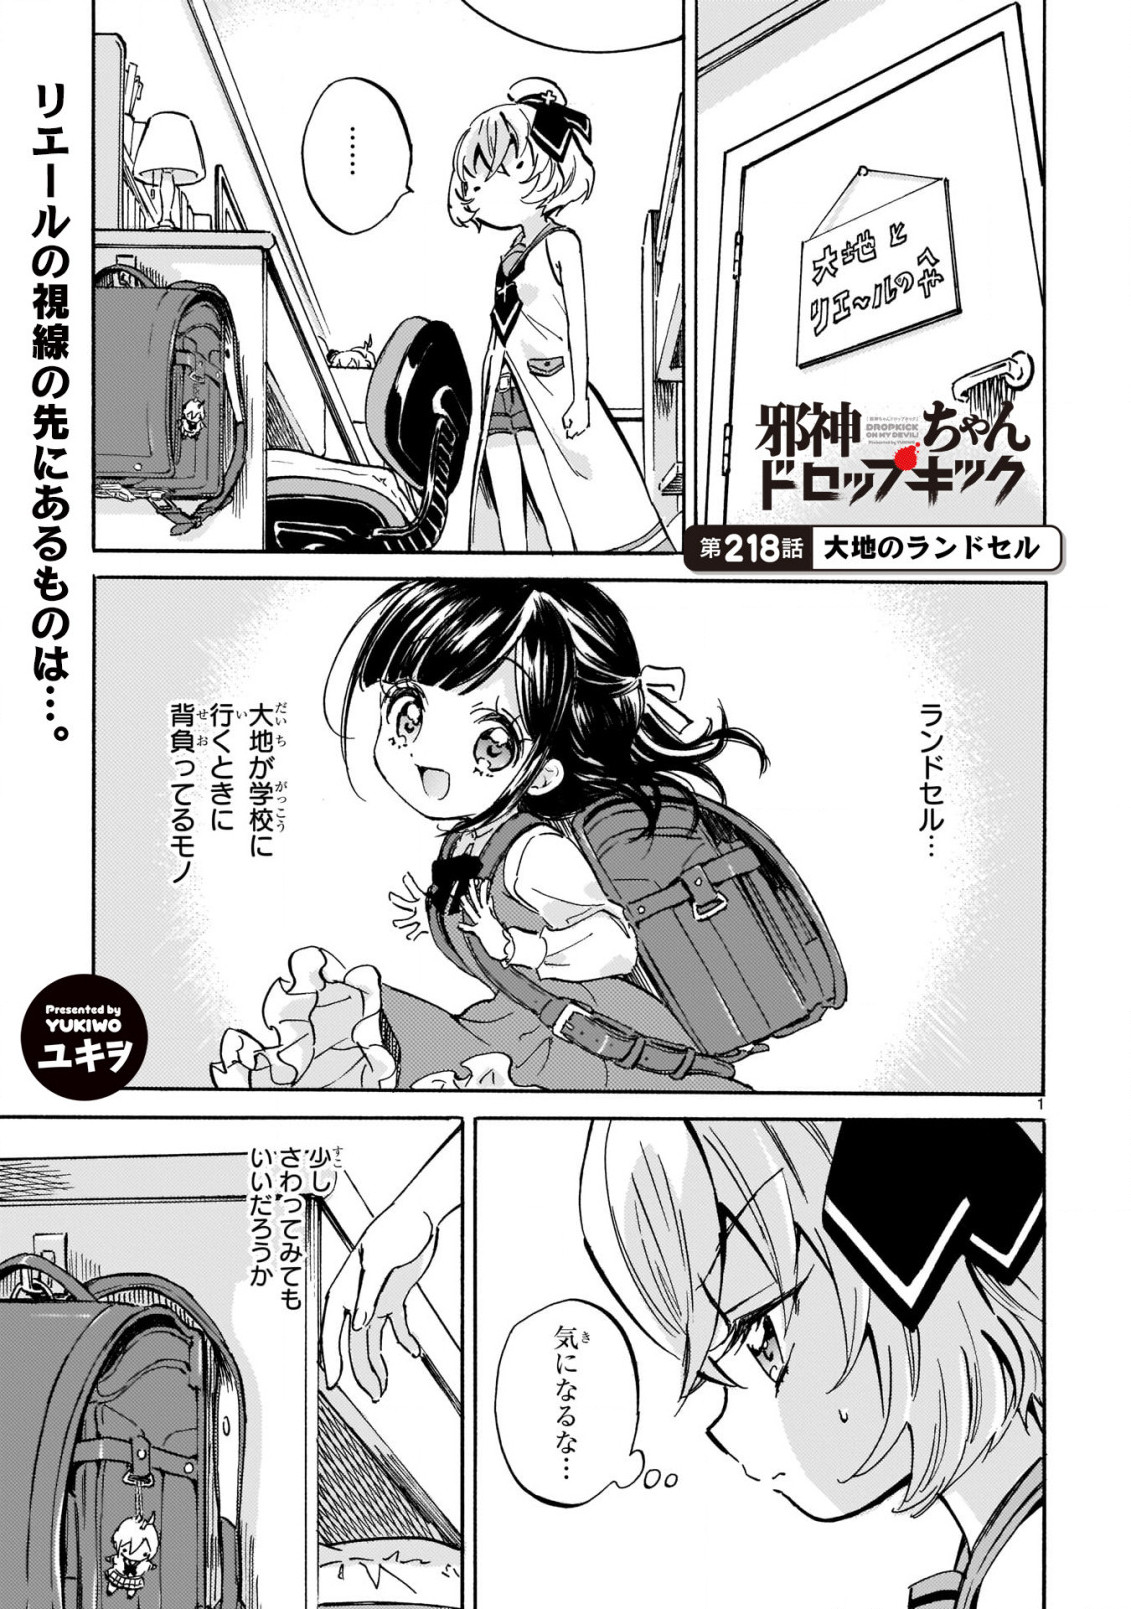 Jashin-chan Dropkick - Chapter 218 - Page 1